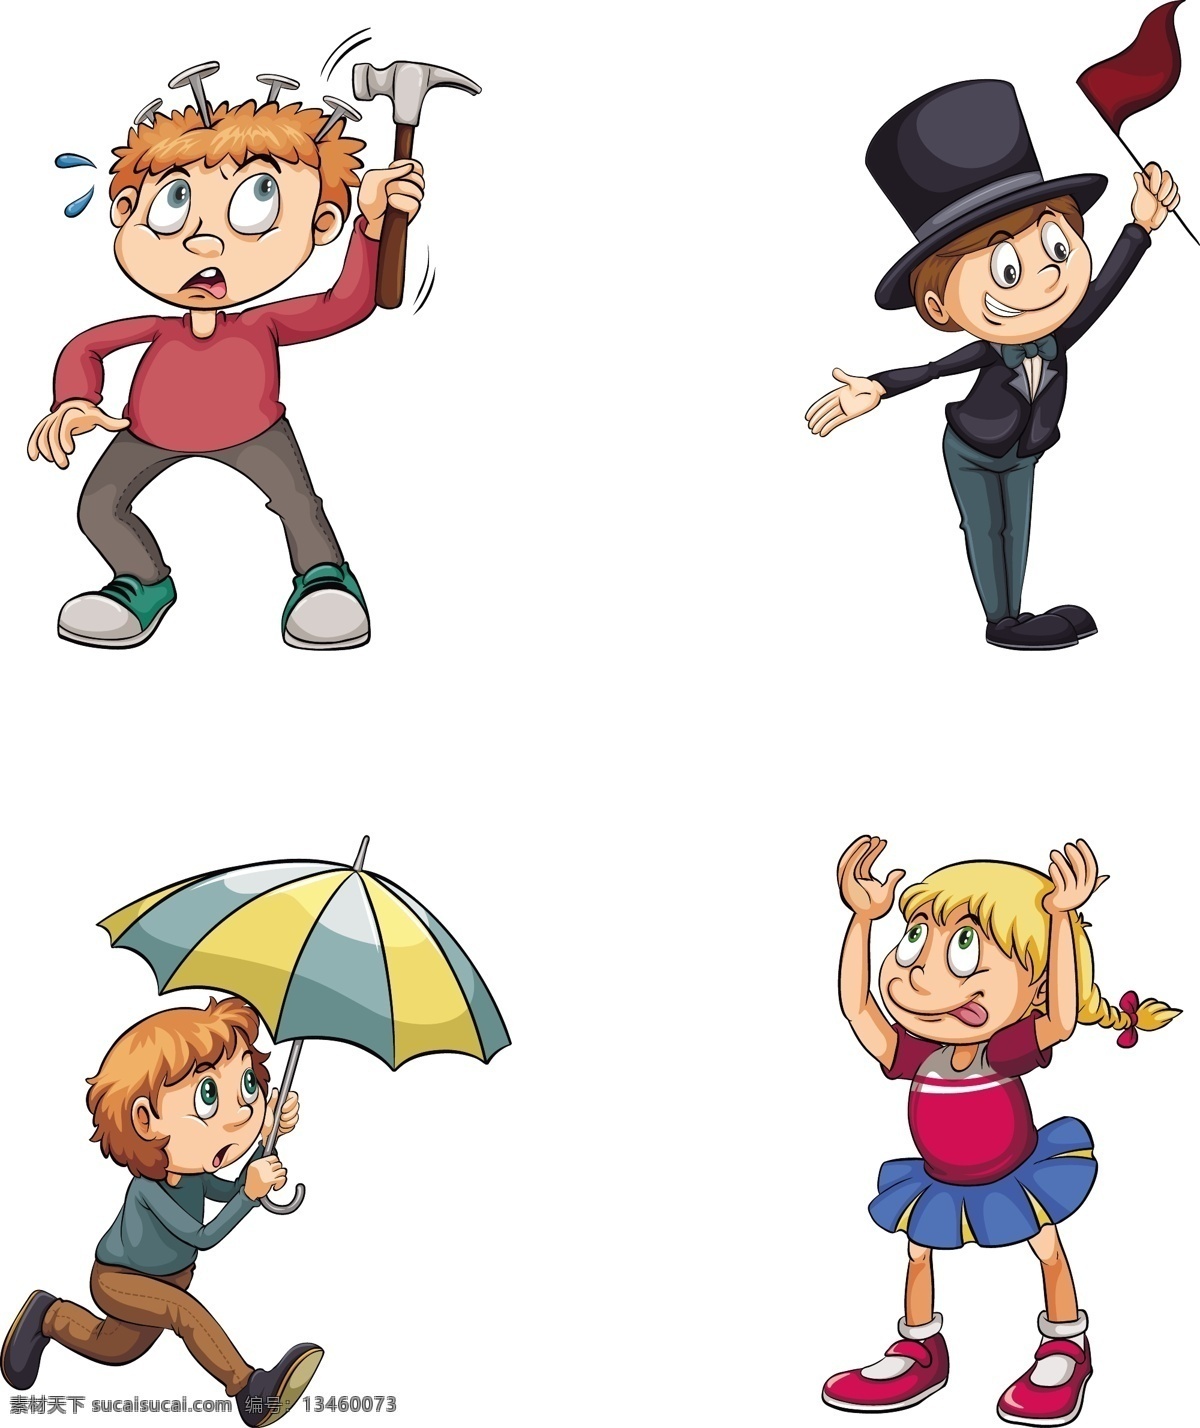 人物 卡通 矢量图 学生 小学生 女孩 男孩 打伞 表演 锤子 调皮 矢量卡通 动漫动画 动漫人物